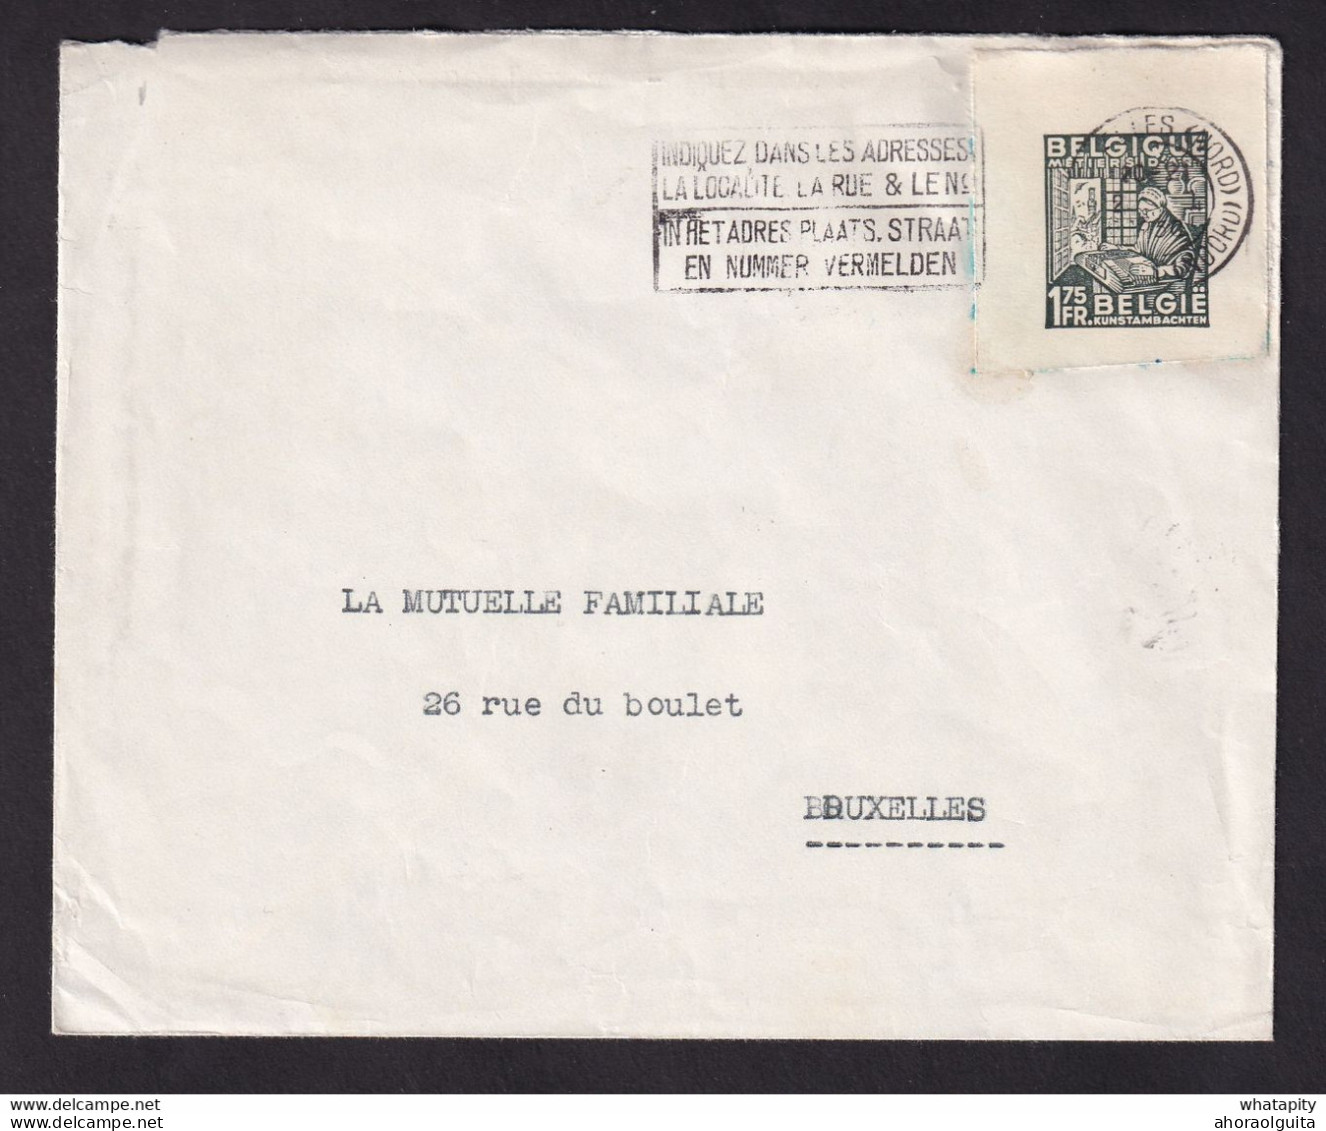 DDBB 751 - Enveloppe Avec 1 DECOUPURE Carte-Lettre Exportations BRUXELLES Nord 1950 Vers La Ville - Cartes-lettres